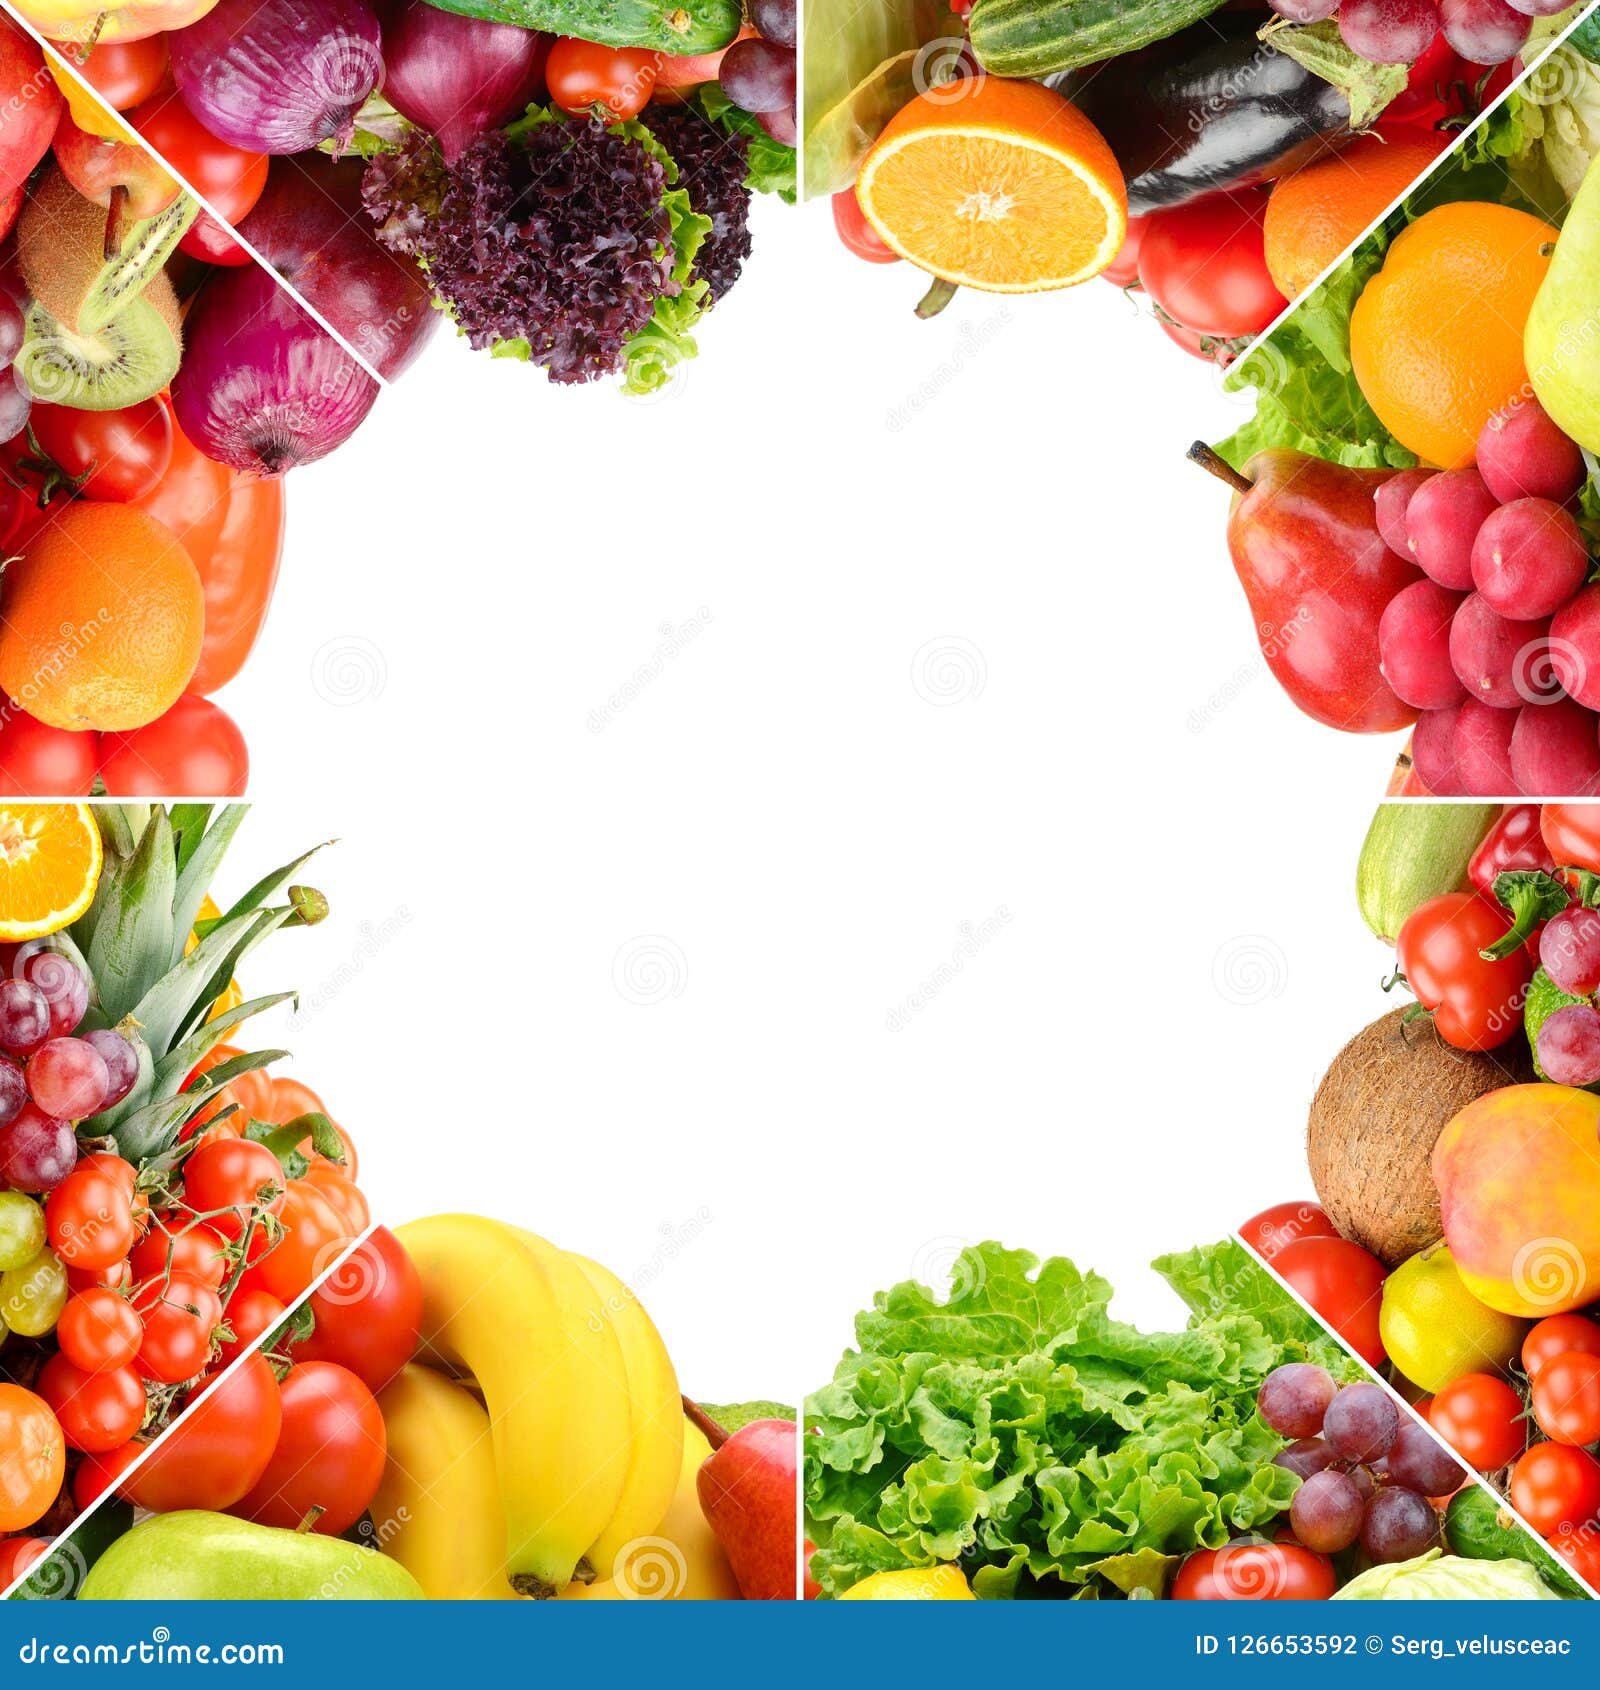 Featured image of post Imagens De Frutas E Verduras Separadas - Aqui vc vai encontrar modelos dos mais lindos e apetitosos pratos decorados com frutas